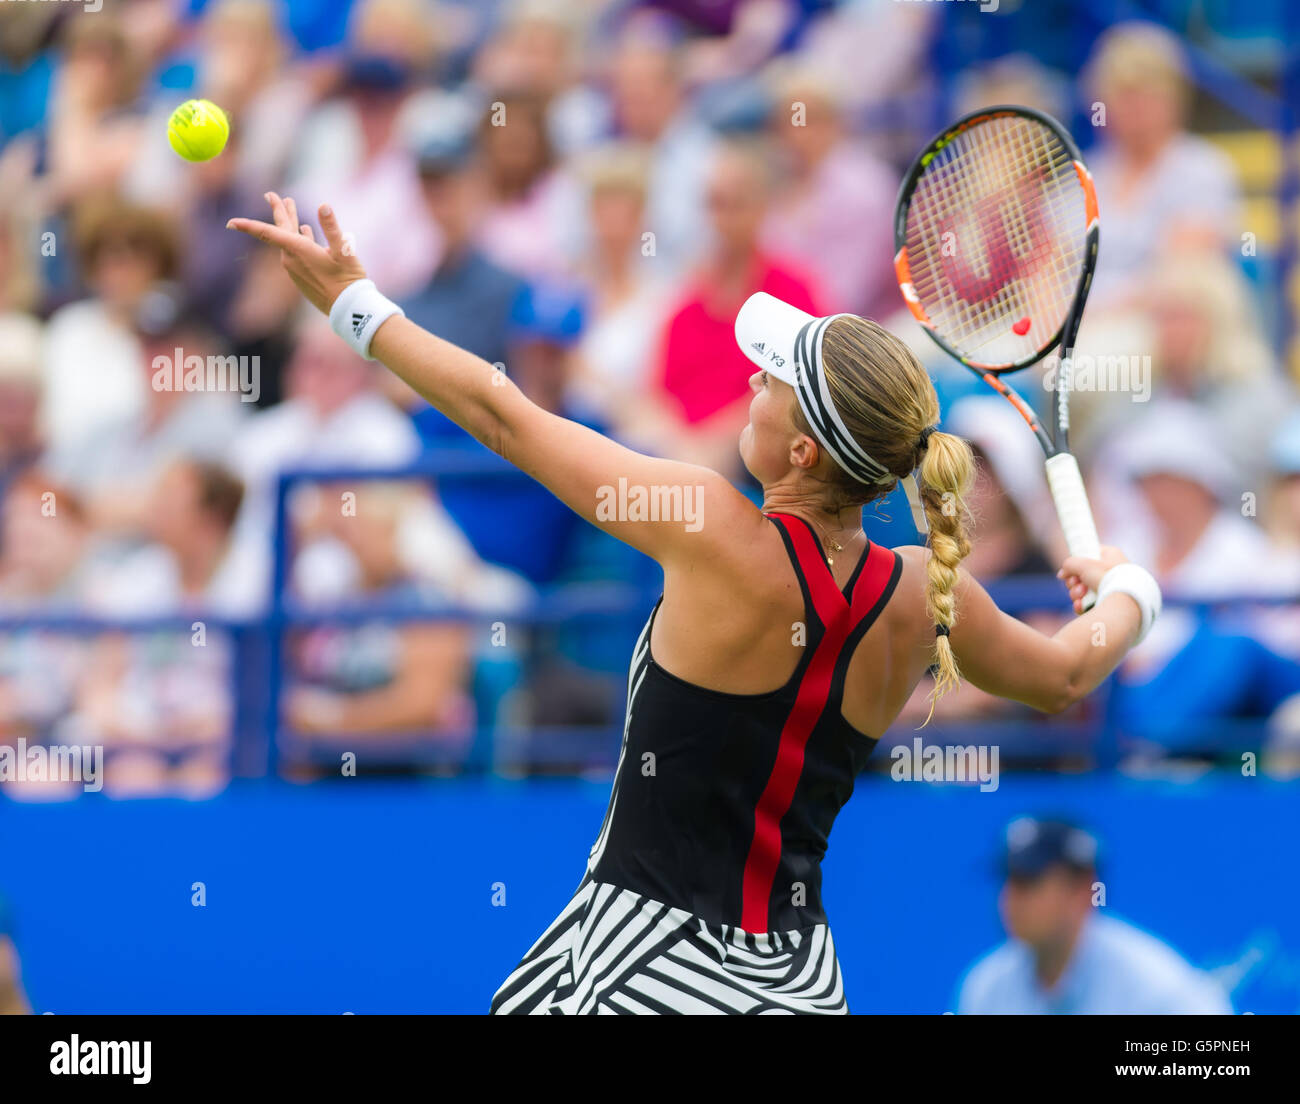 Eastbourne, Vereinigtes Königreich. 23. Juni 2016. Kristina Mladenovic in Aktion beim Tennisturnier 2016 Aegon International WTA Premier Credit: Jimmie48 Fotografie/Alamy Live News Stockfoto